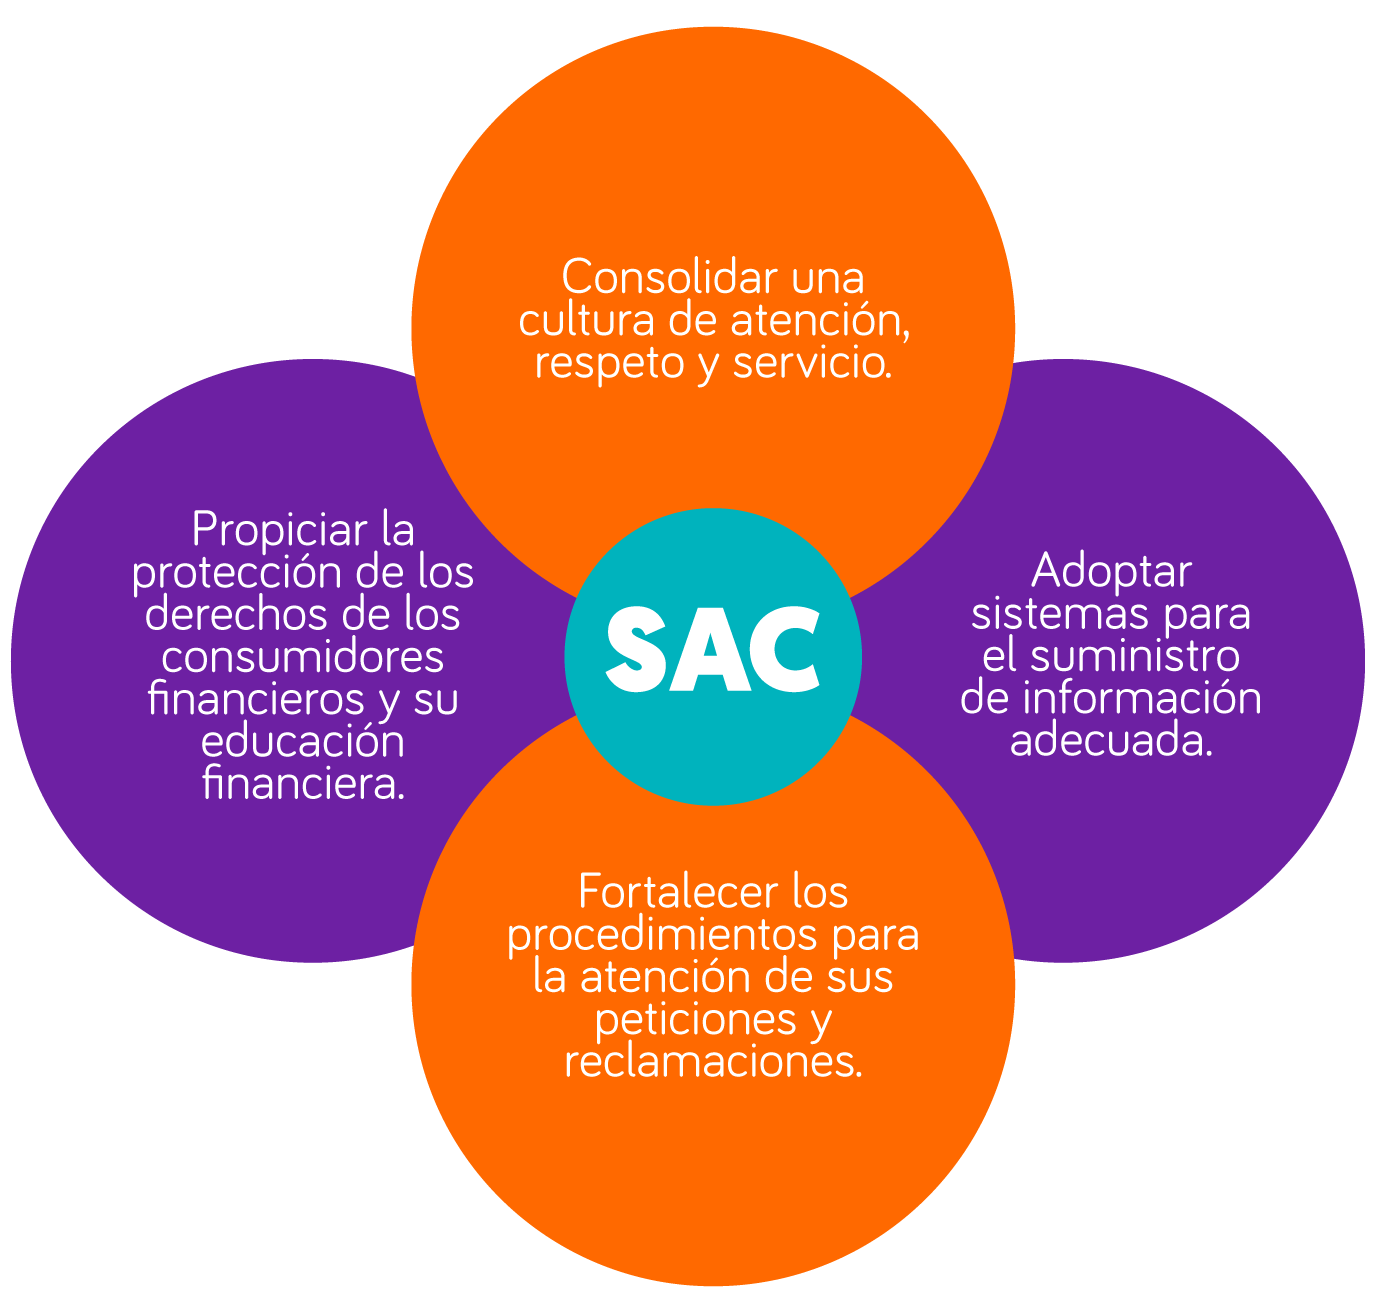 SAC: Consolidar una cultura de atención, respeto y servicio, adoptar sistemas para el suminitro de información adecuada, fortalecer los procedimientos para la atención de sus peticiones y reclamaciones, propiciar la protección de los derechos de los consumidores financieros y su educación financiera